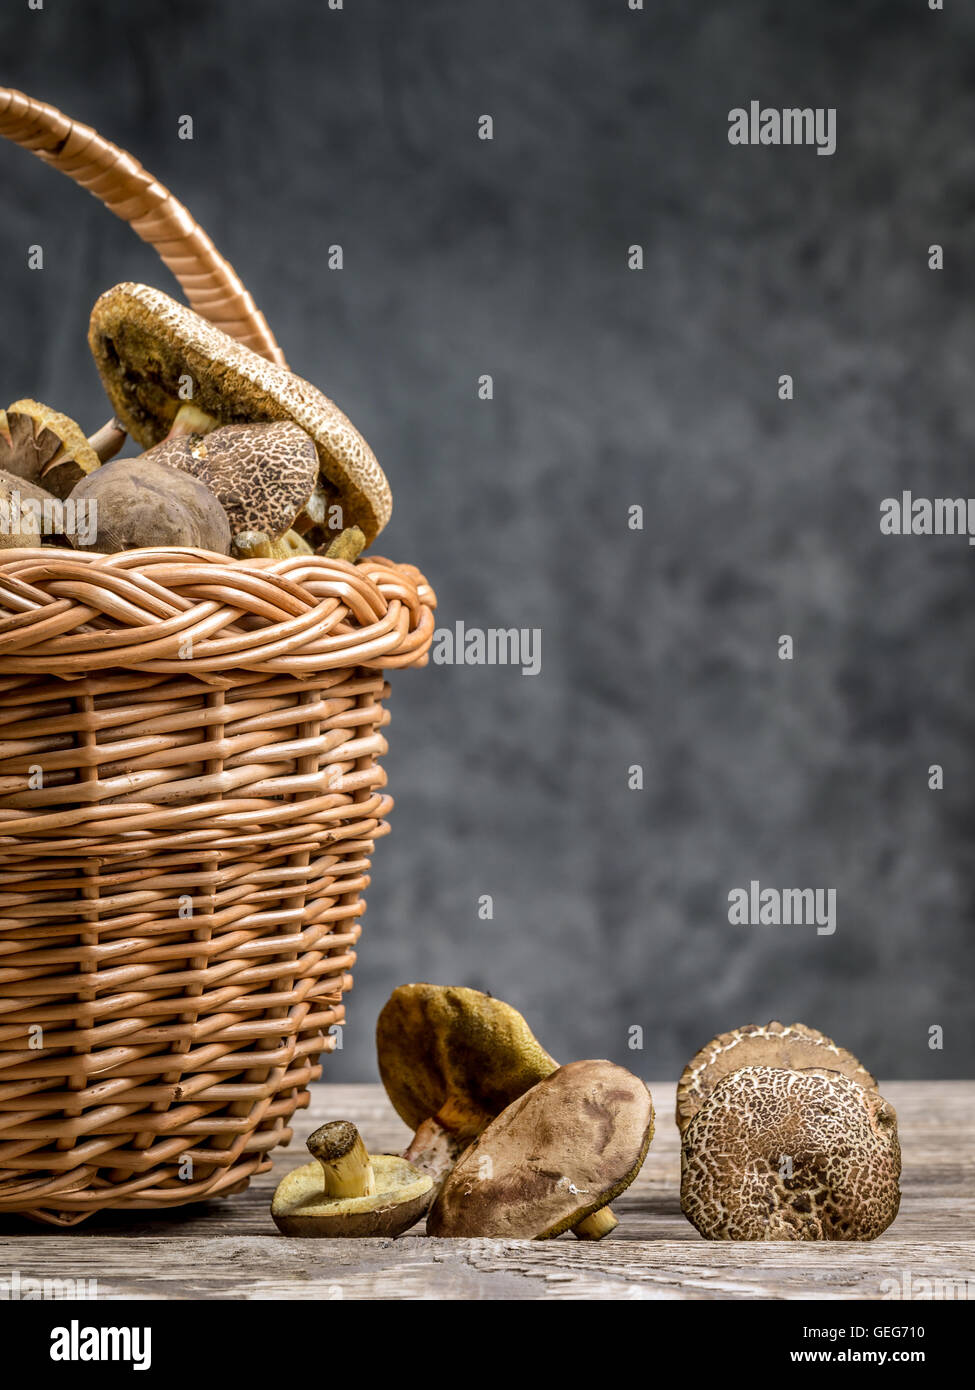 Panier en osier plein de champignons comestibles sur table en bois Banque D'Images